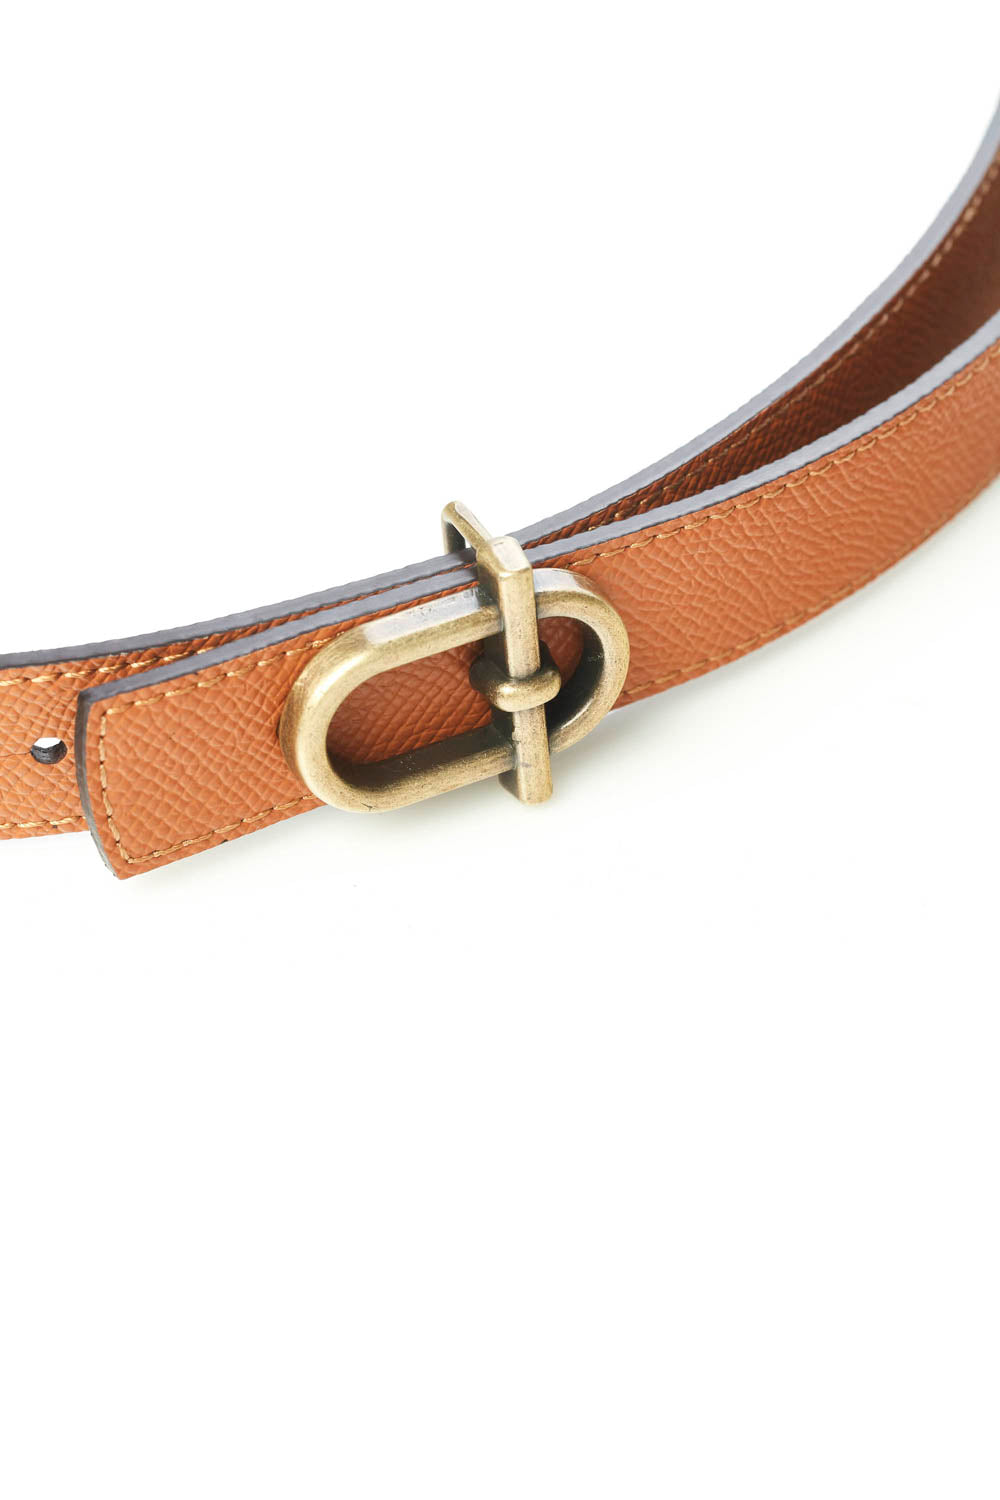 Sling Leather Belt - Black/Brown